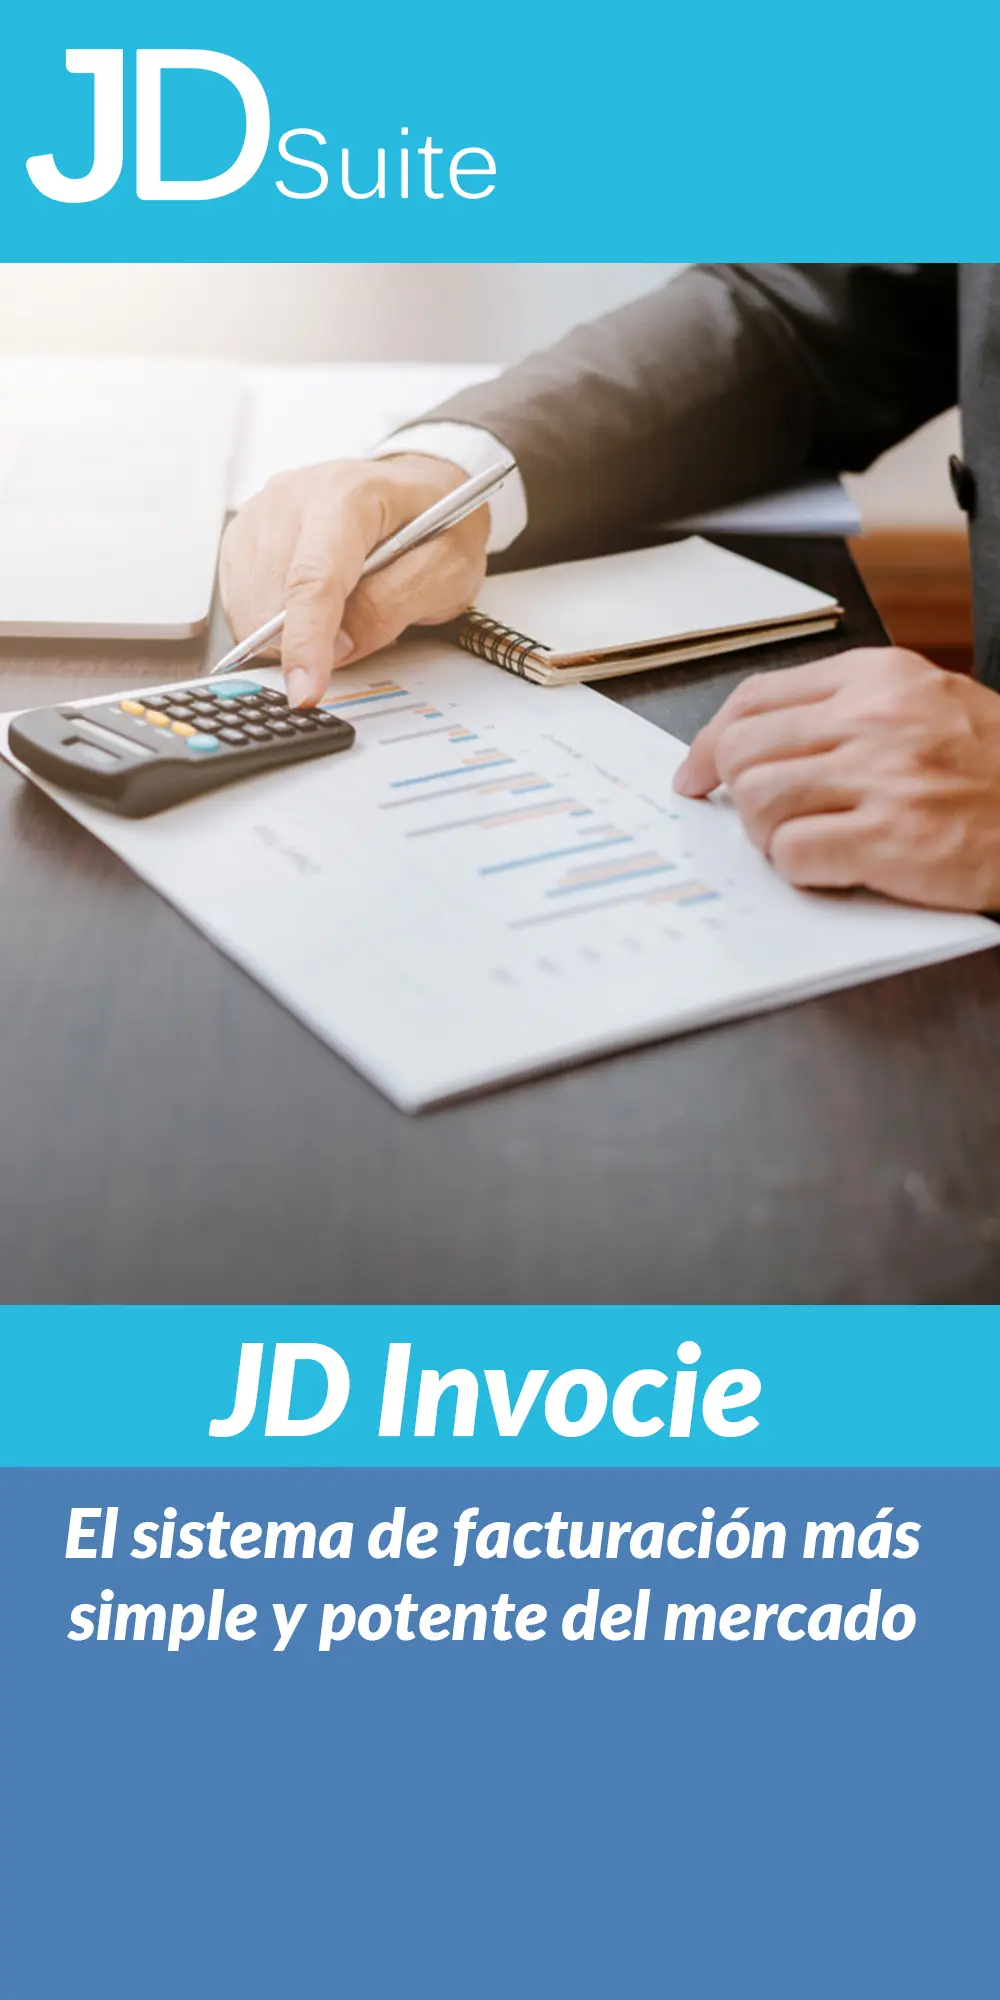 jd invoice es el sistema de facturación más simple y potente del mercado.